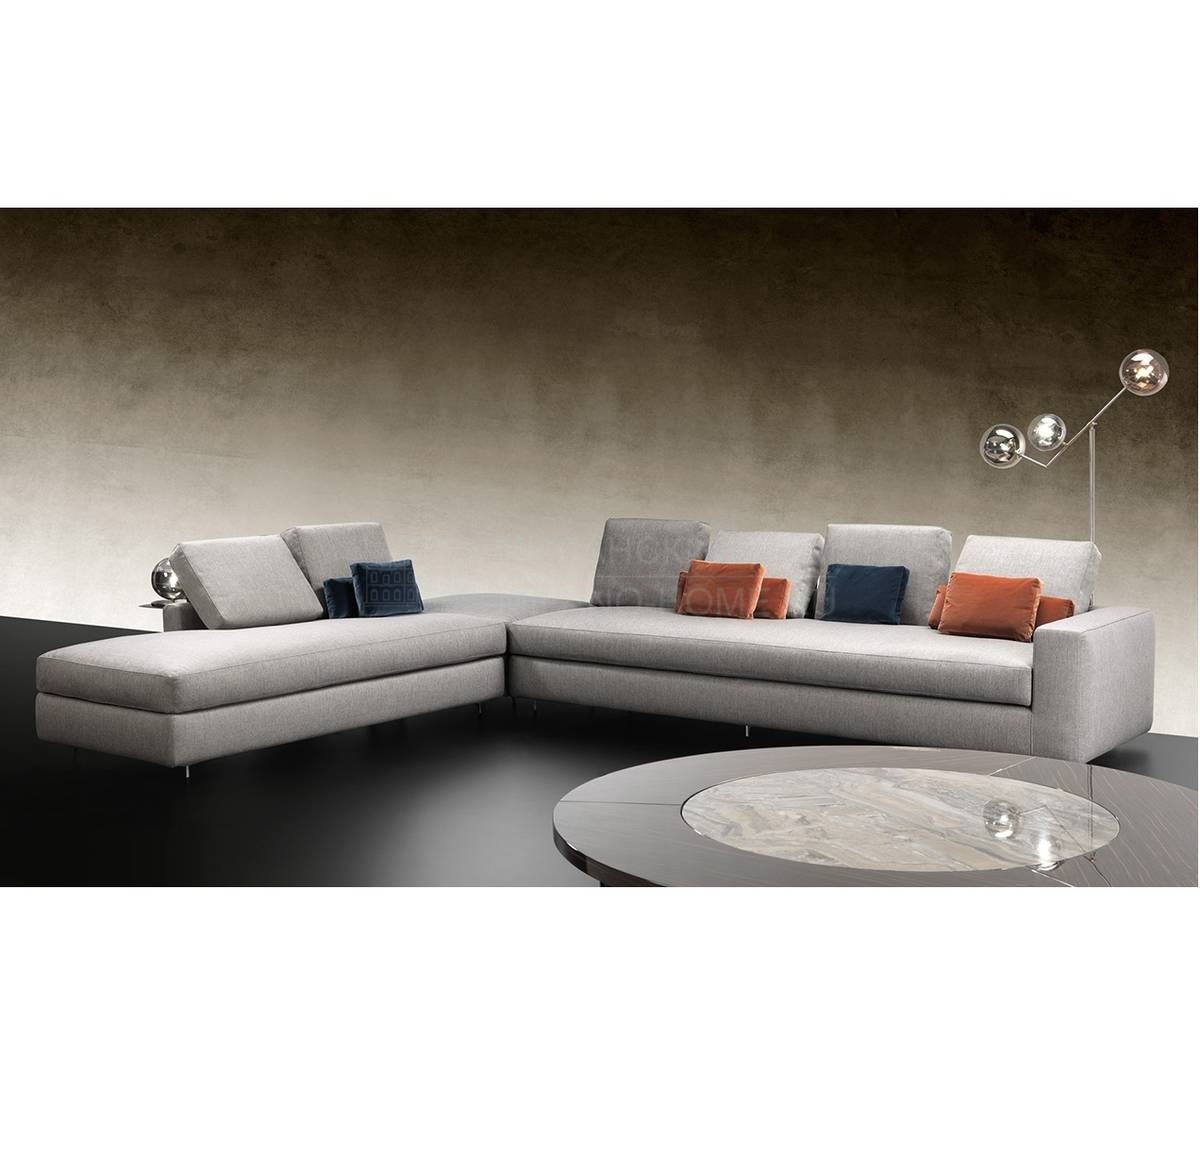 Модульный диван Adone Sofa из Италии фабрики REFLEX ANGELO